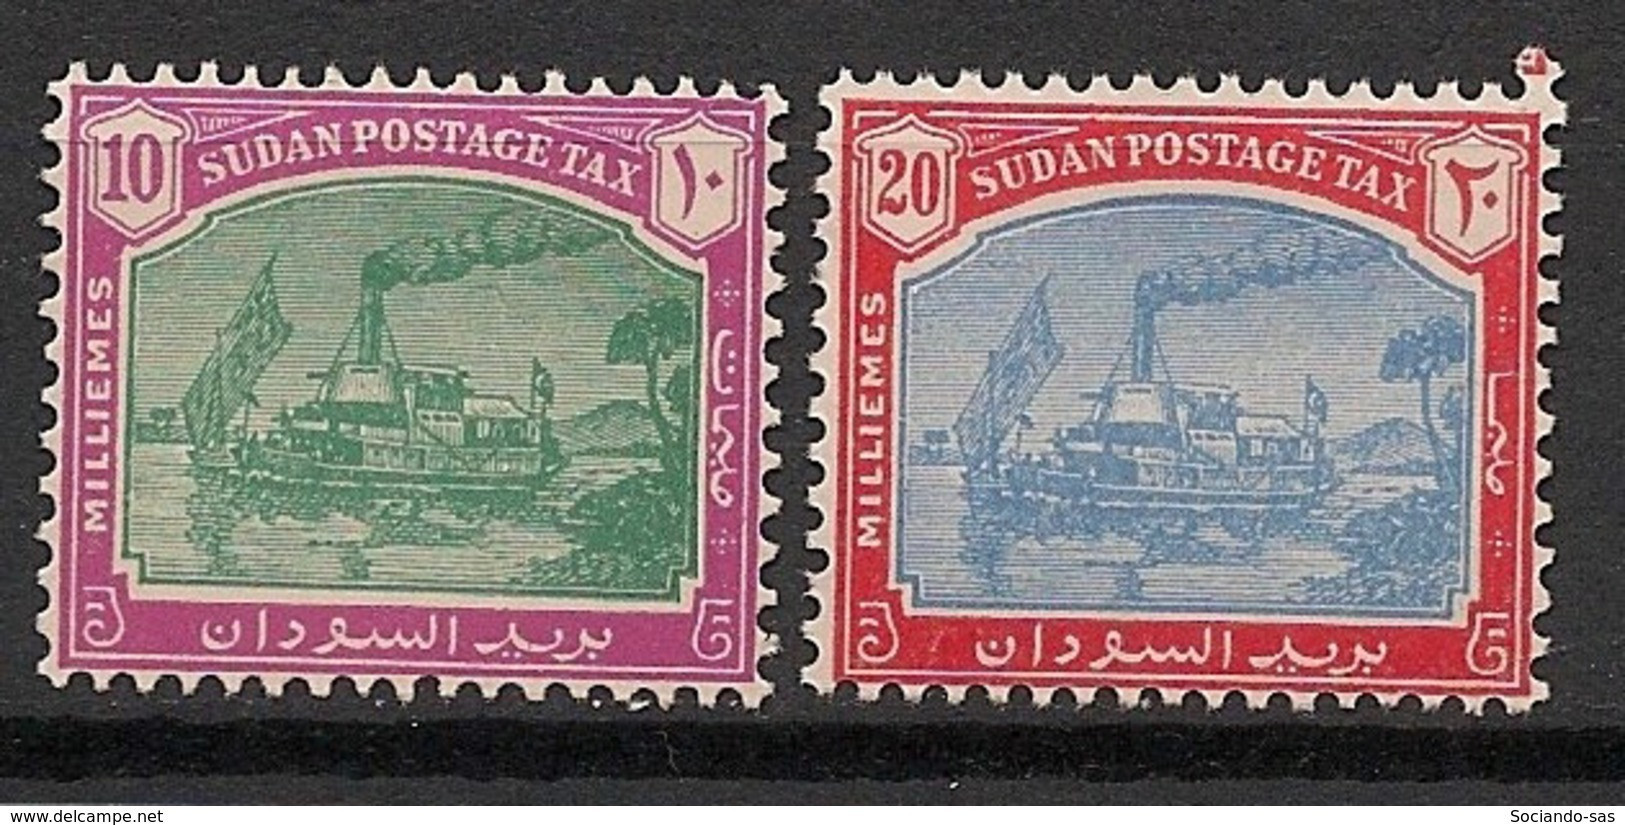 SOUDAN - 1980 - Taxe TT N°Mi. 16 à 17 - Série Complète - Neuf Luxe ** / MNH / Postfrisch - Sudan (1954-...)